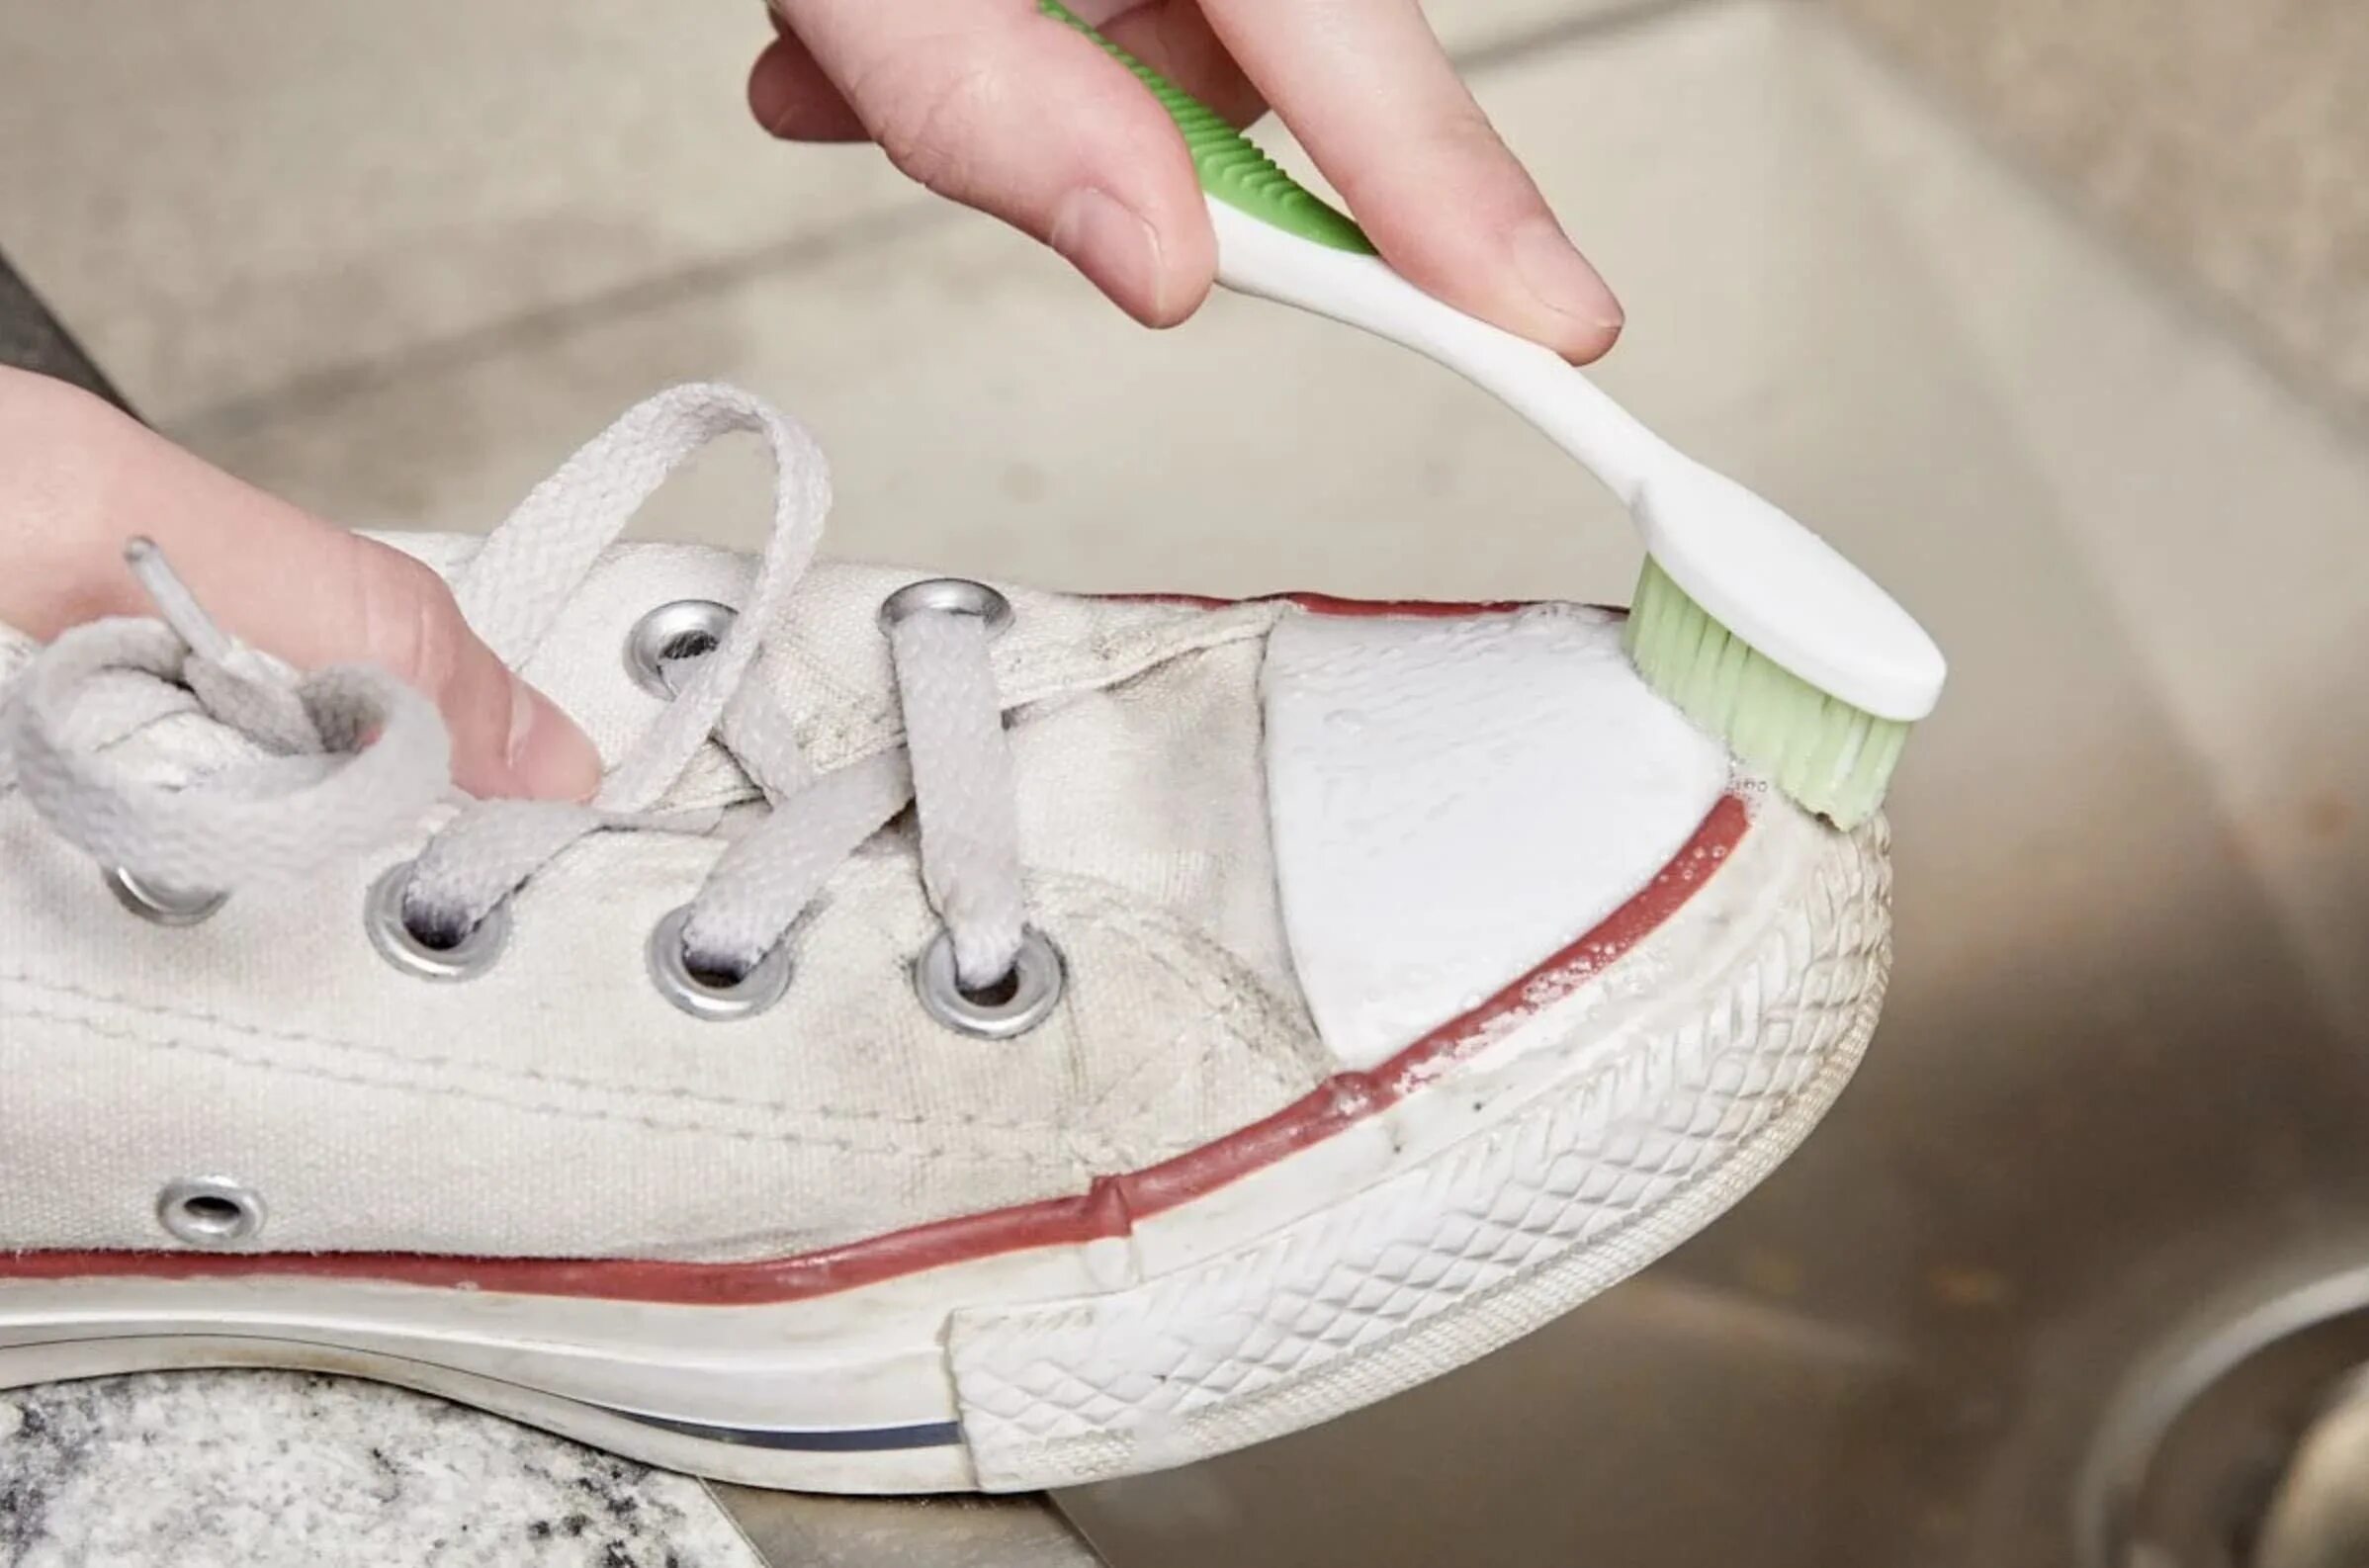 Кеды в клею. Зубная паста для кроссовок. Протирает белую кеды салфеткой. Очистить белую обувь зубной пастой. Чем можно оттереть кроссовки